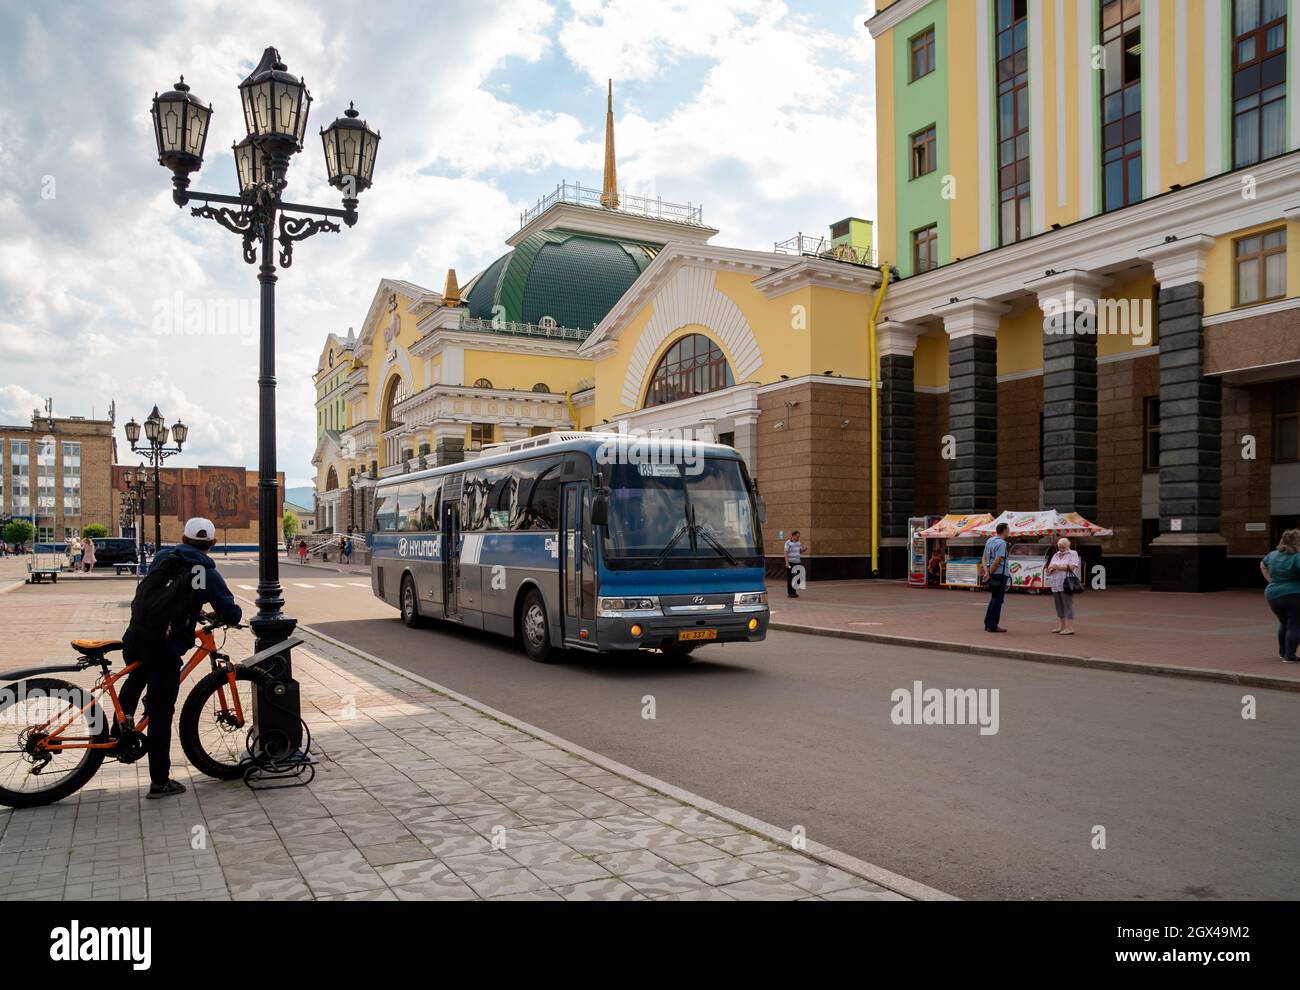 Un ciclista vicino ad un lampione guarda ad un autobus che passa accanto alla stazione ferroviaria principale della città. Foto Stock